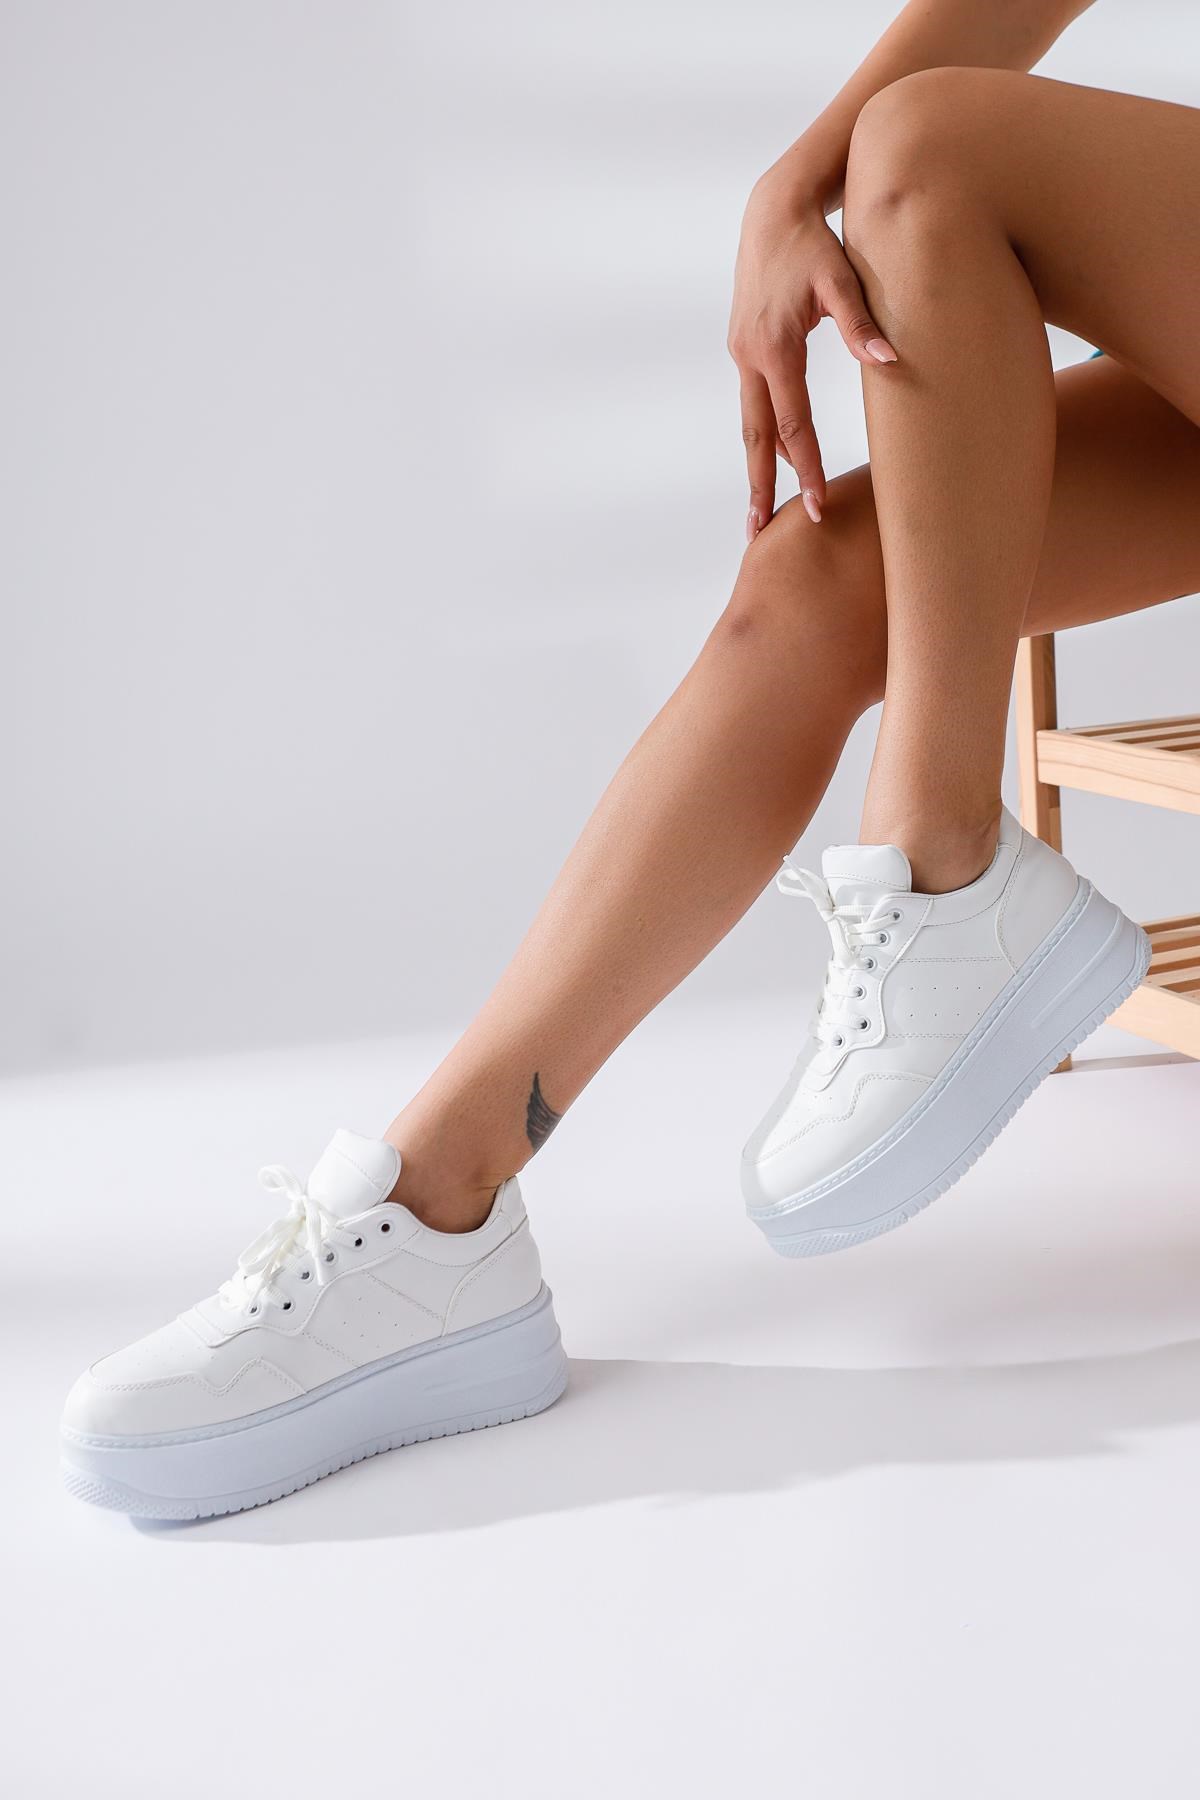 Bonnie Beyaz Kalın Tabanlı Bağcıklı Sneakers Spor Ayakkabı | Limoya.com ile  Modayı Keşfet!